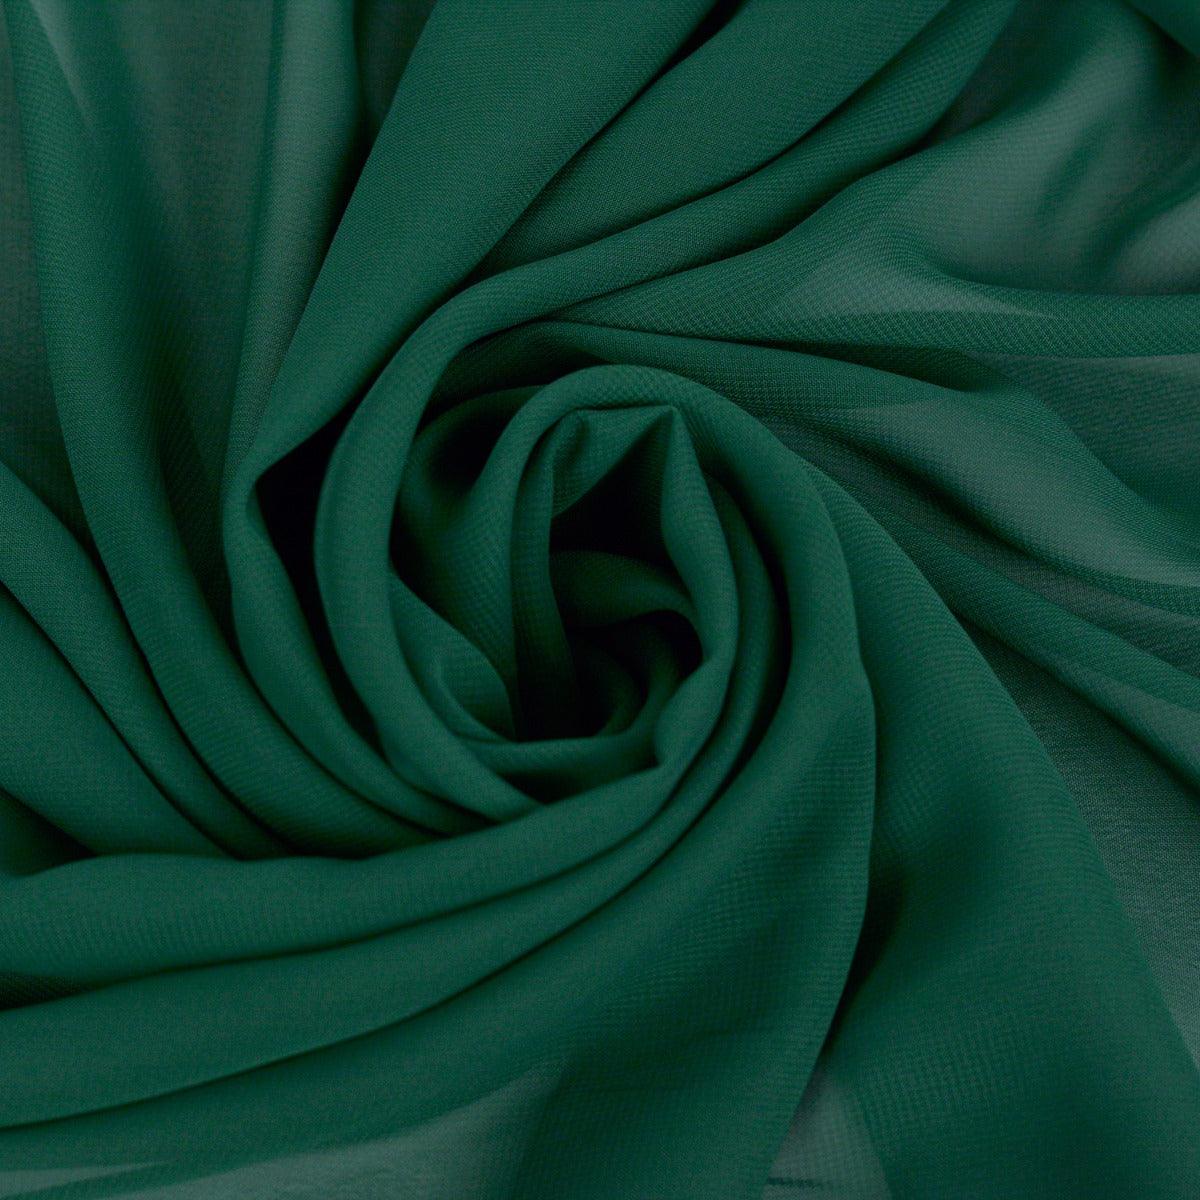 Voal Chiffon - Verde Smarald folosit la fabricarea rochiilor